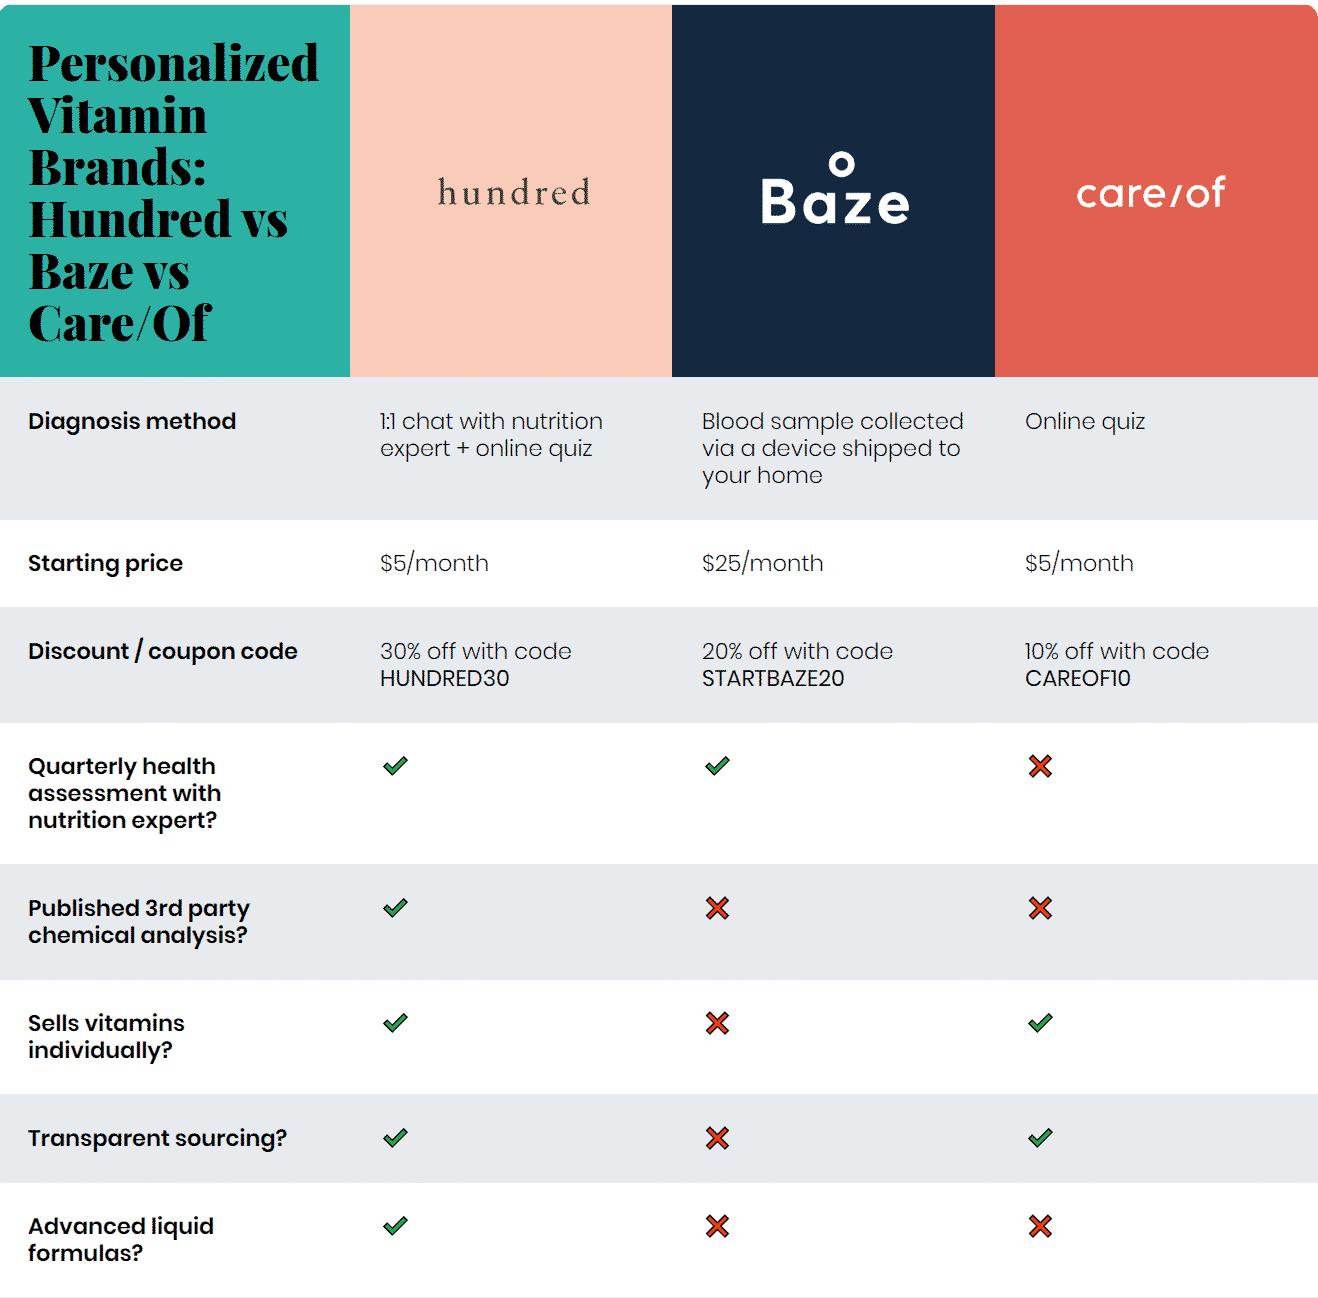 Hundred vs Baze vs Care/Of vs Persona